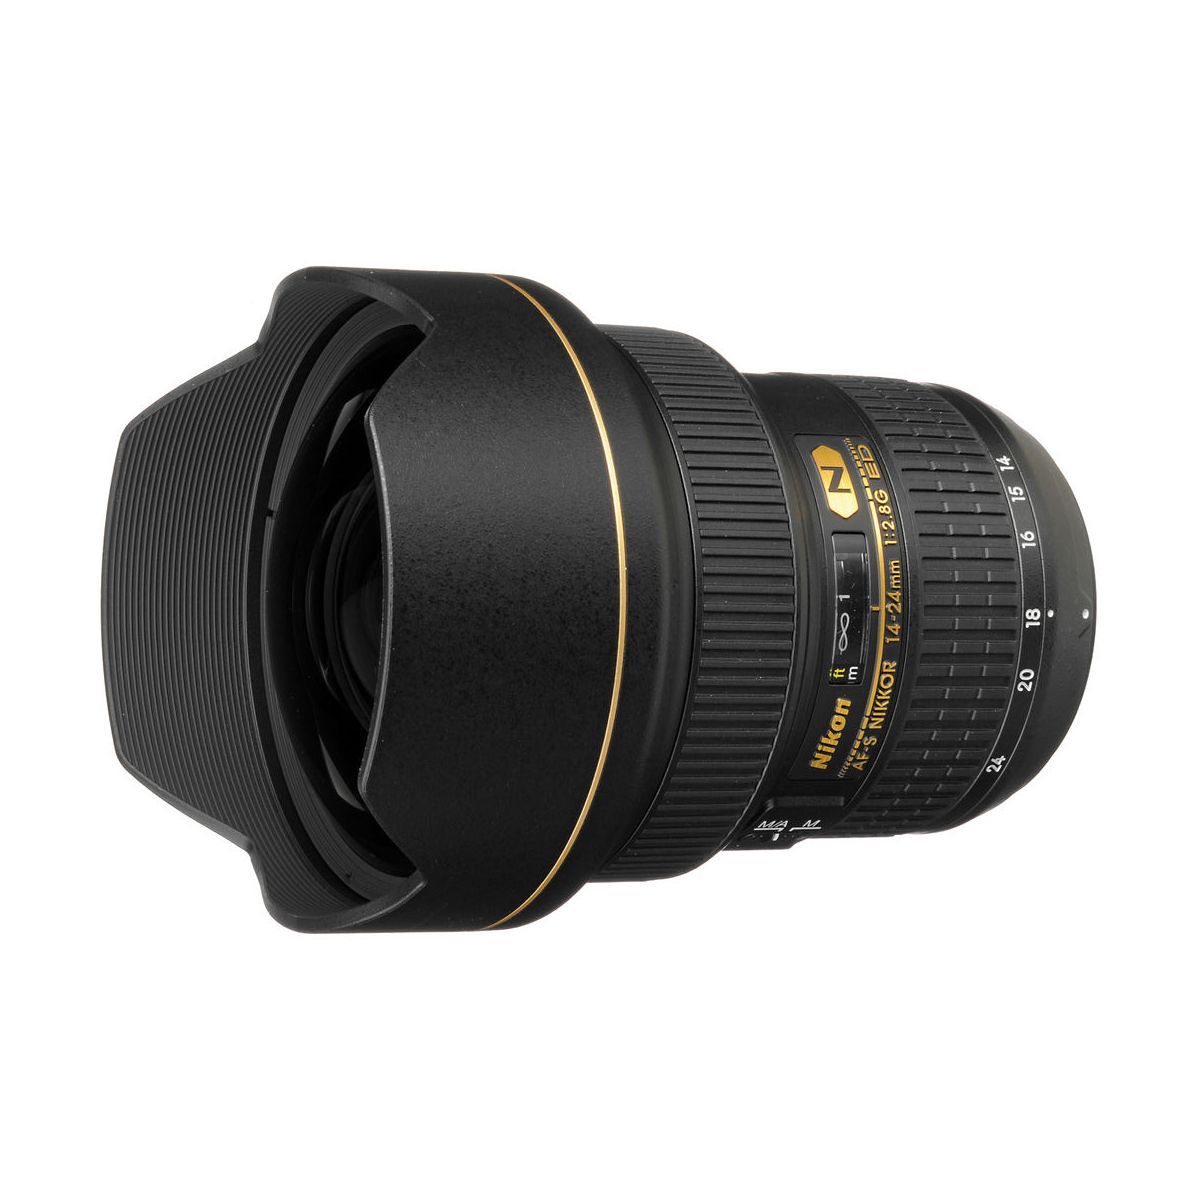 Nikon AF-S Nikkor 14-24mm F2.8G ED Lens